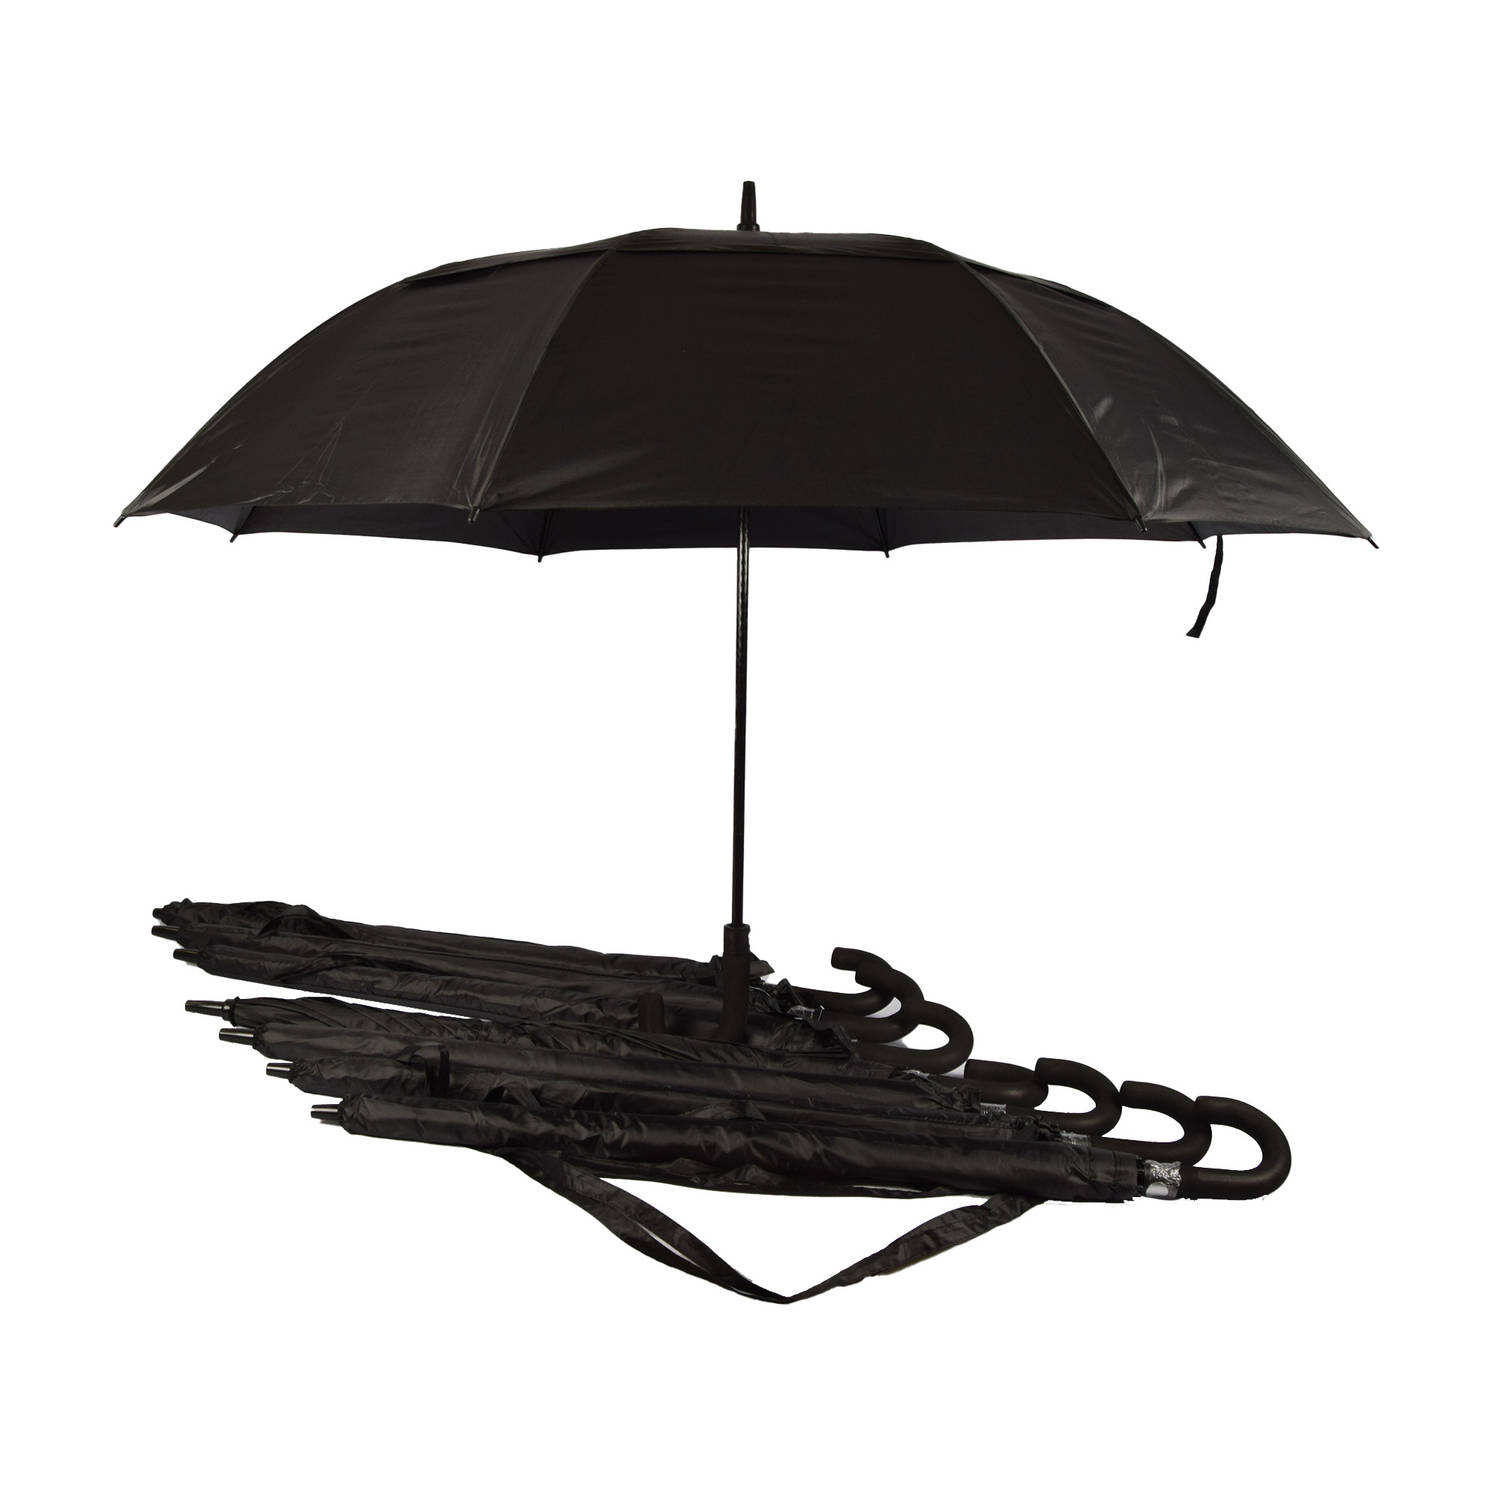 Discountershop Set van 8 Automatische Paraplu's - Opvouwbaar Paraplu met Beschermhoes - Zwart - 130cm Diameter - Windproof